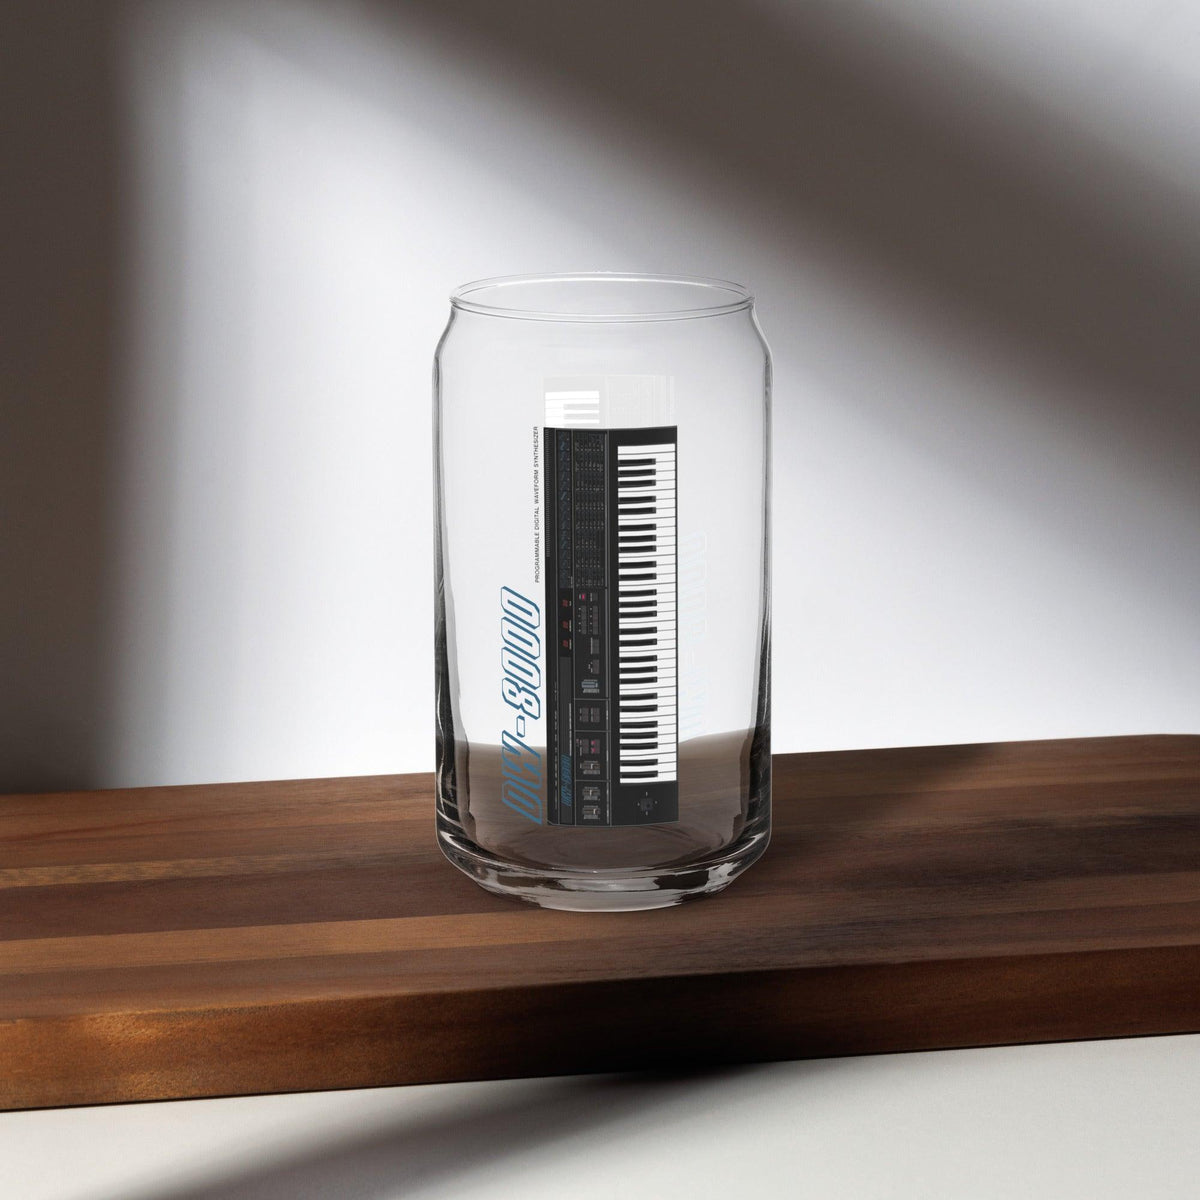 Korg DW-8000 Keyboard Artist Rendition Can Shaped Glass (16 oz.) - Tedeschi Studio, LLC.